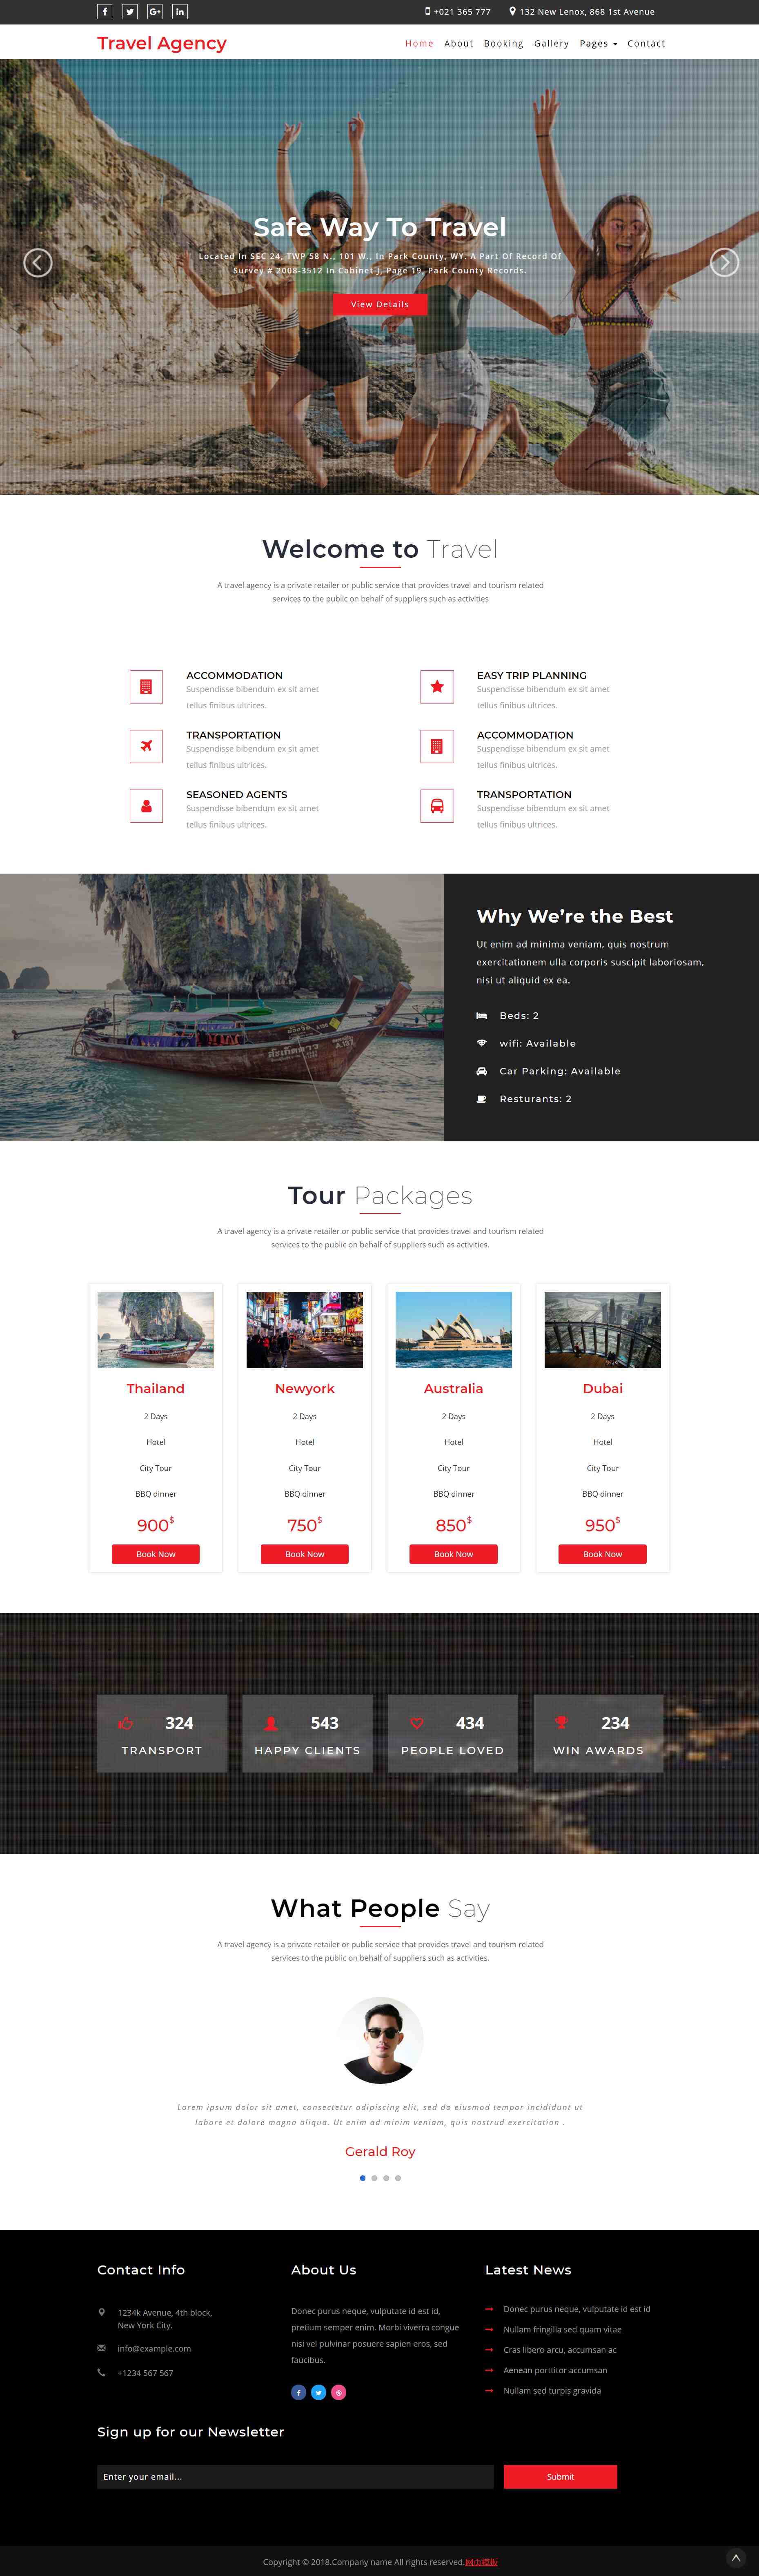 红色简洁形式pc+wap旅游景点介绍网页模板代码下载